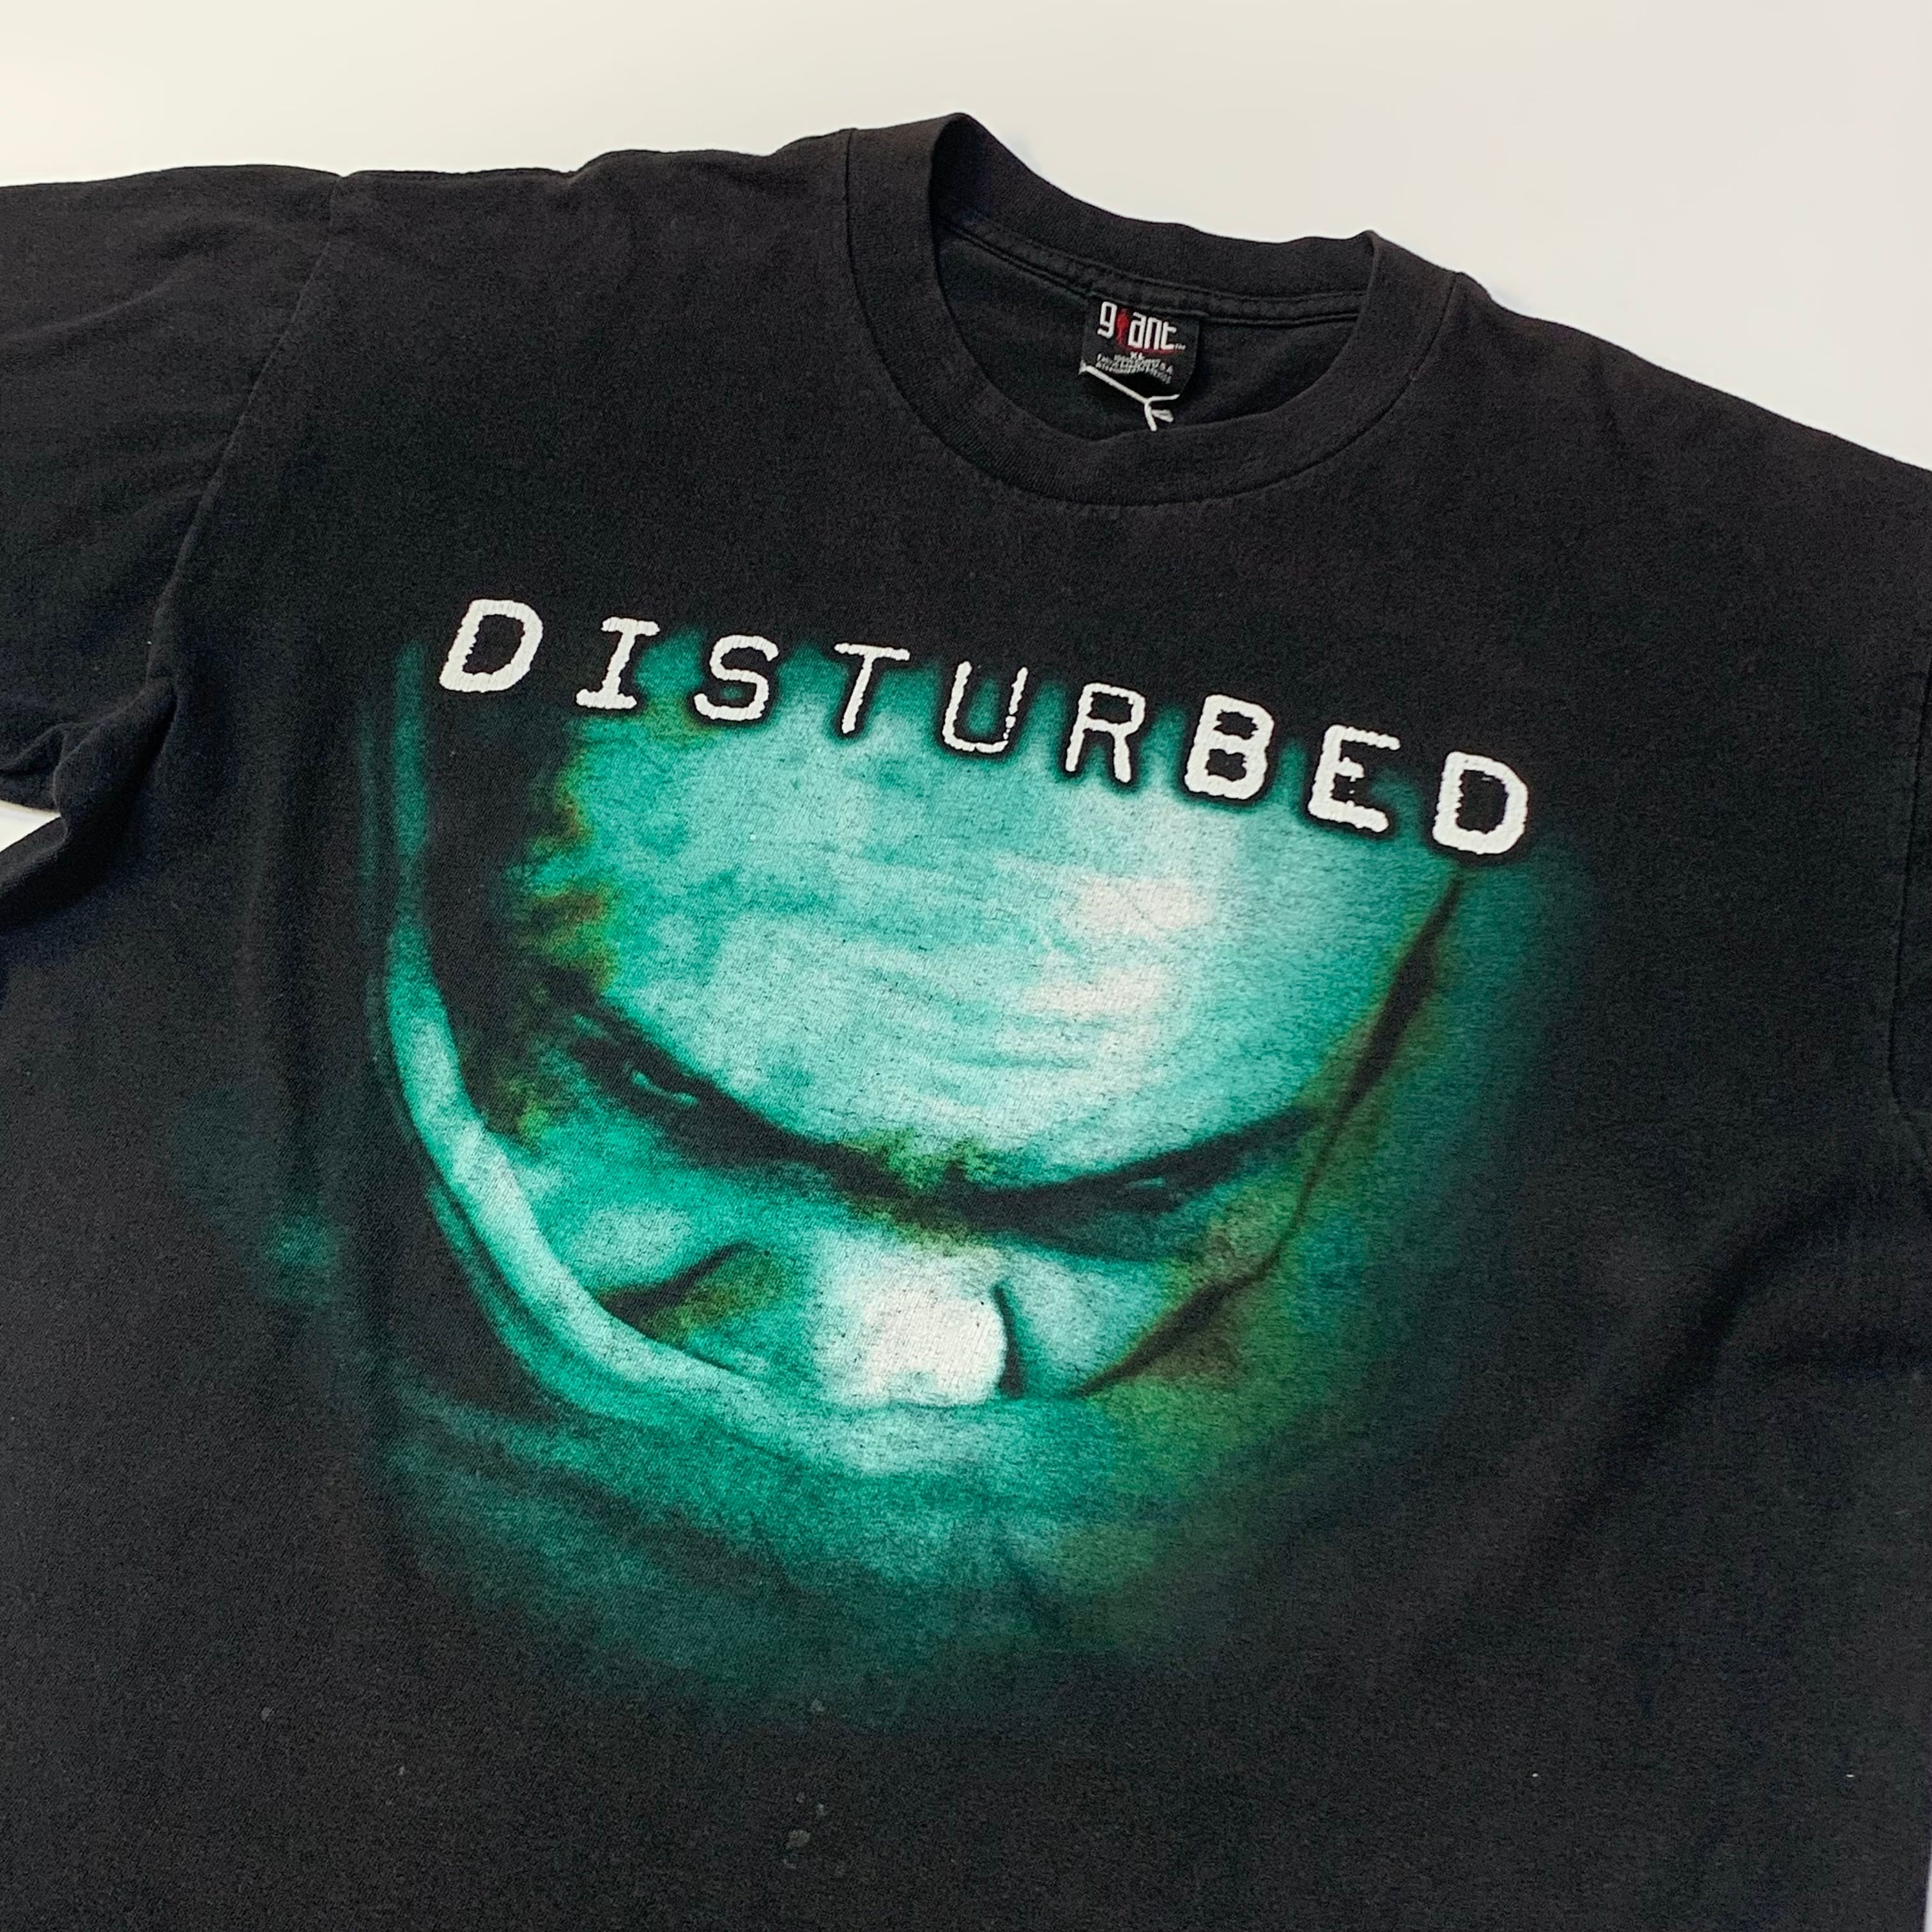 USA製 ヴィンテージ Disturbed/ディスターブド バンドTシャツ-